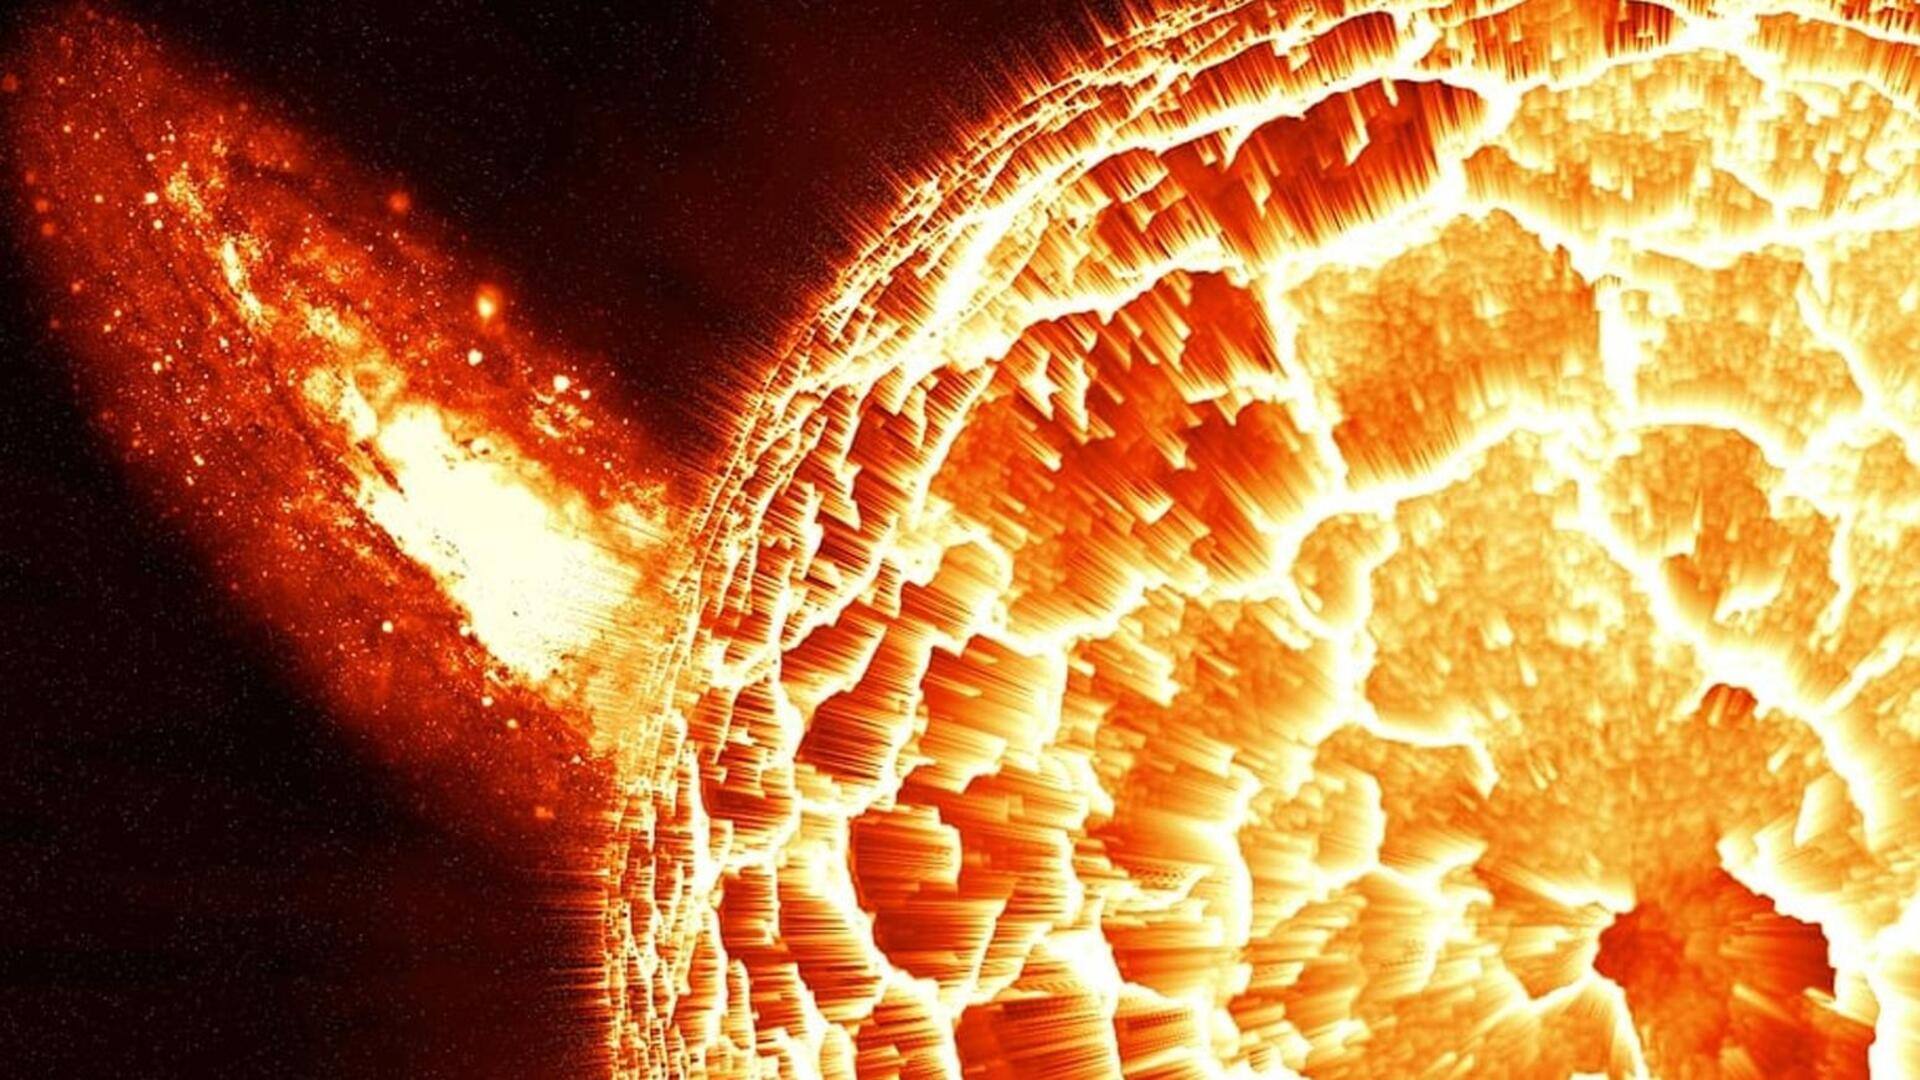 सूर्य पर दिखे 2 नए सनस्पॉट, पृथ्वी पर सौर तूफान आने की जताई जा रही संभावना